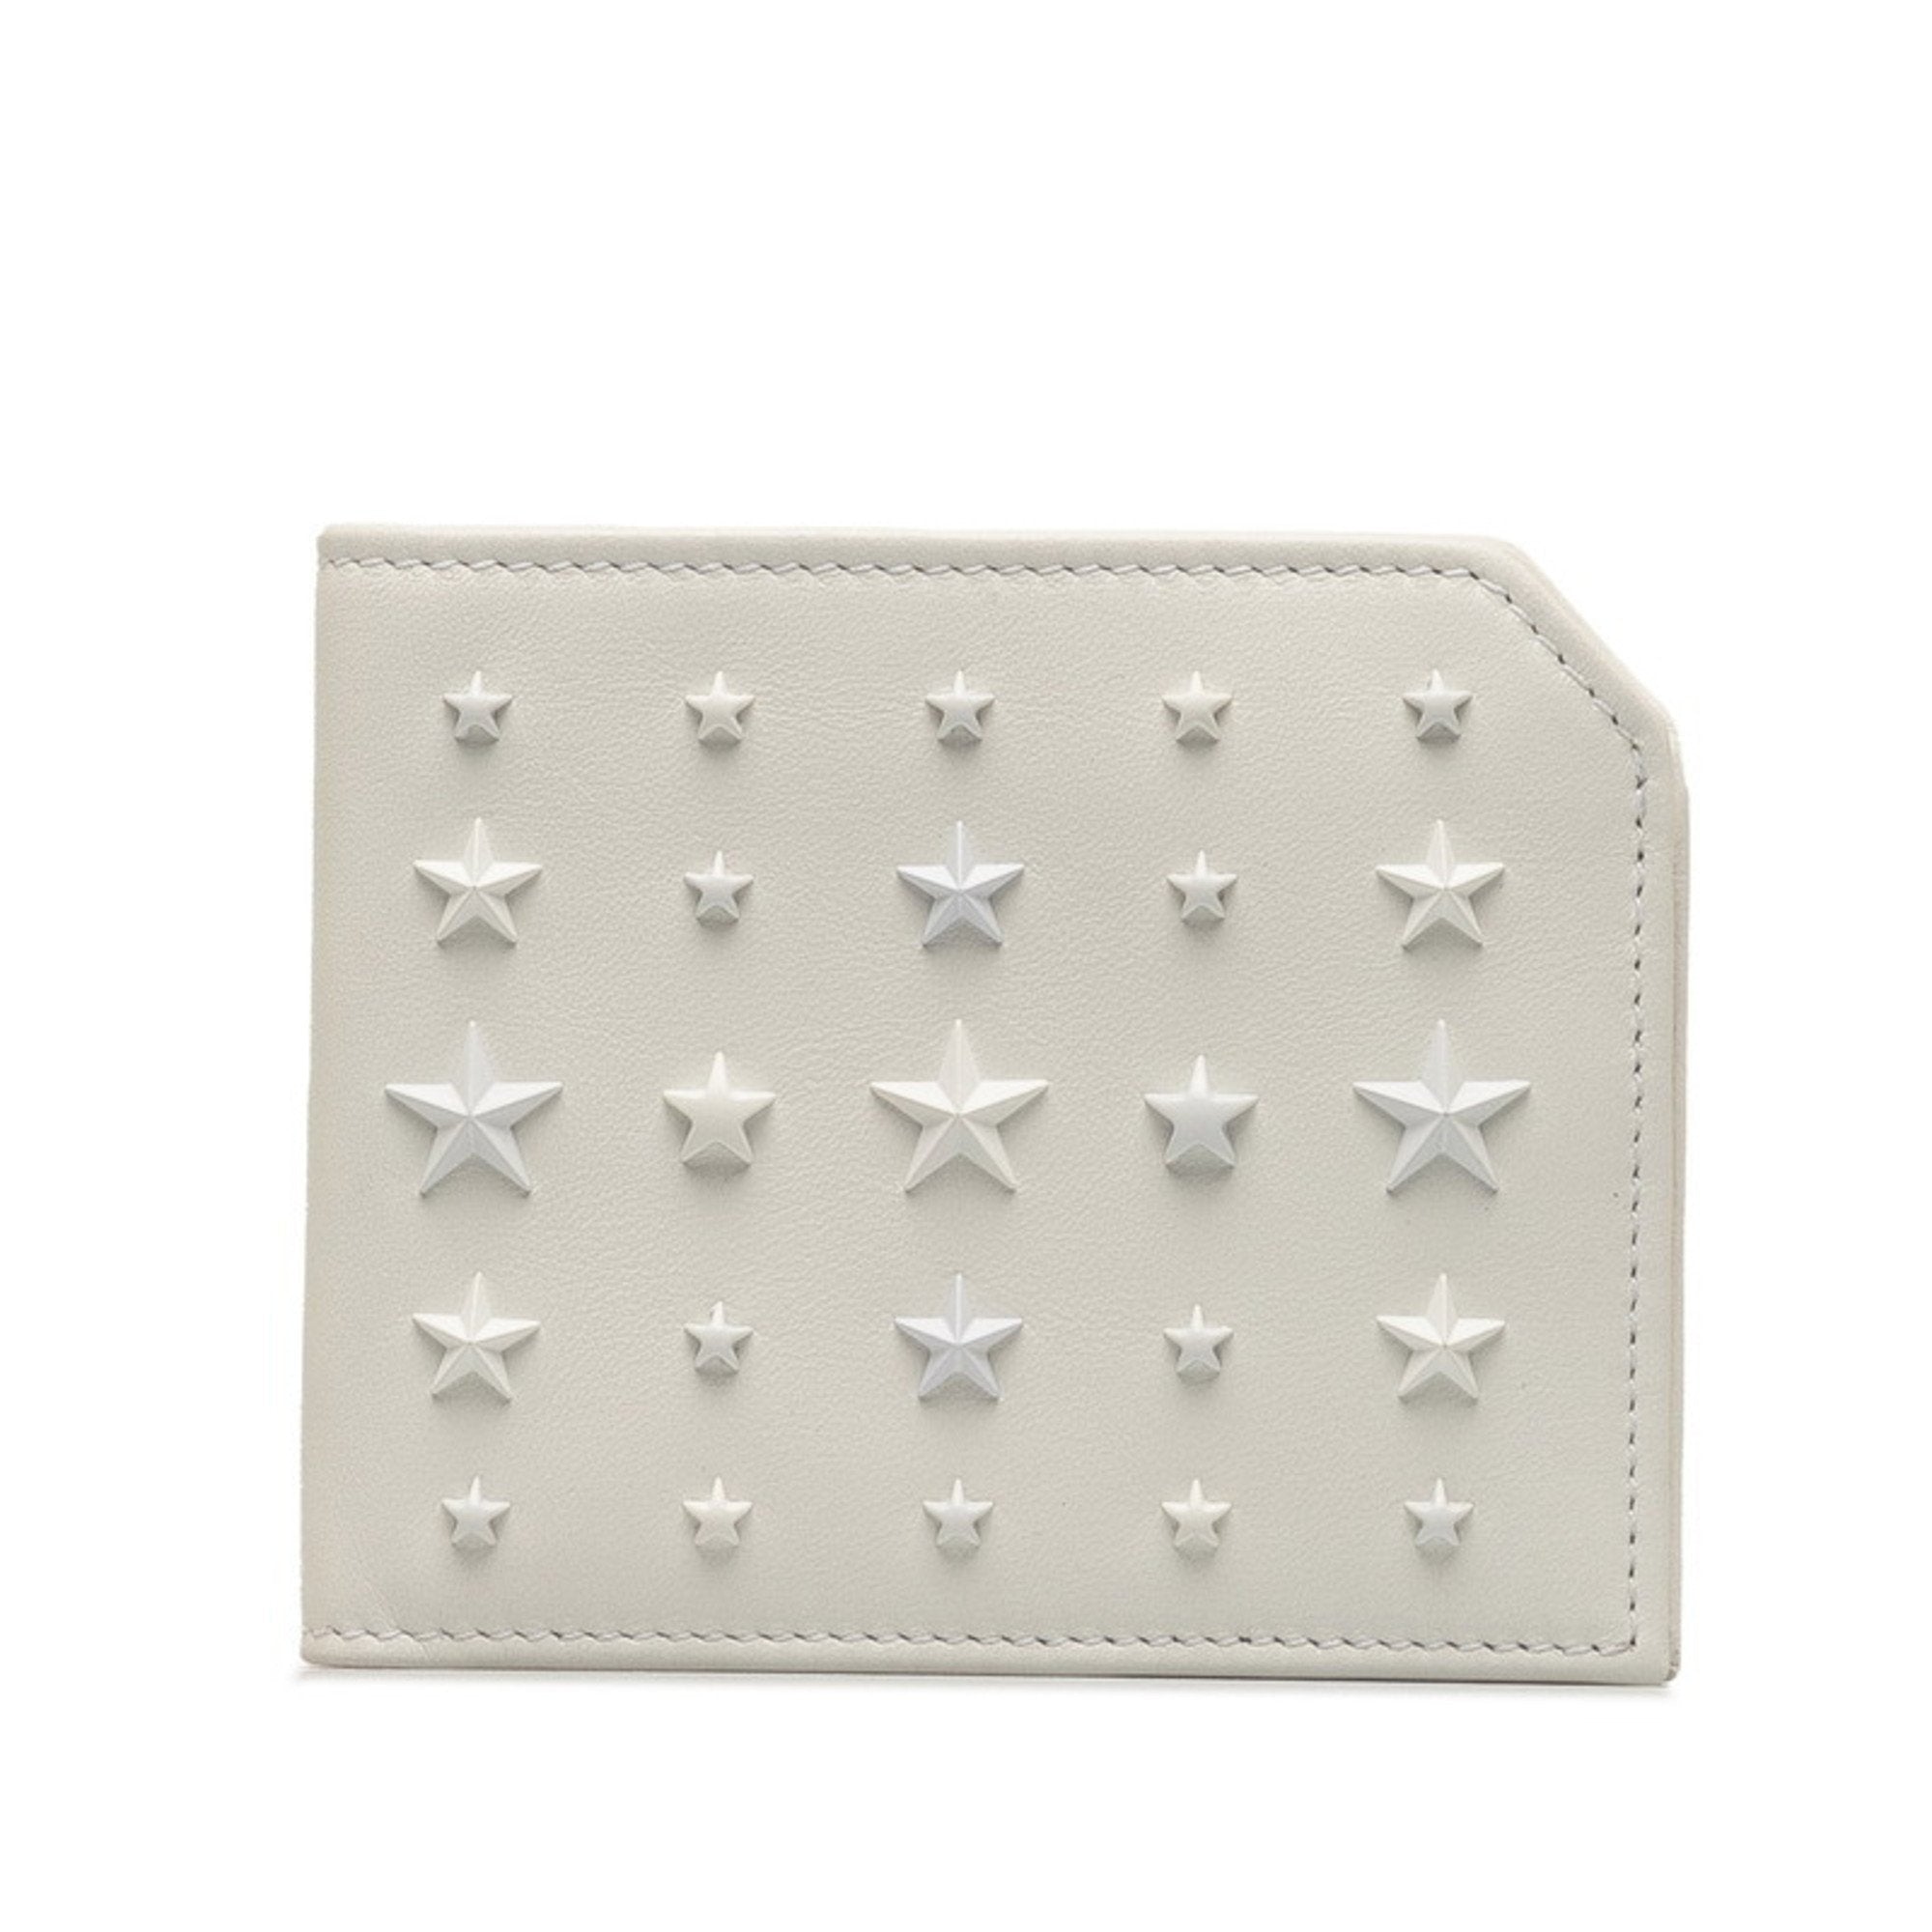 Star Studs Bi-fold Wallet Leather Women's